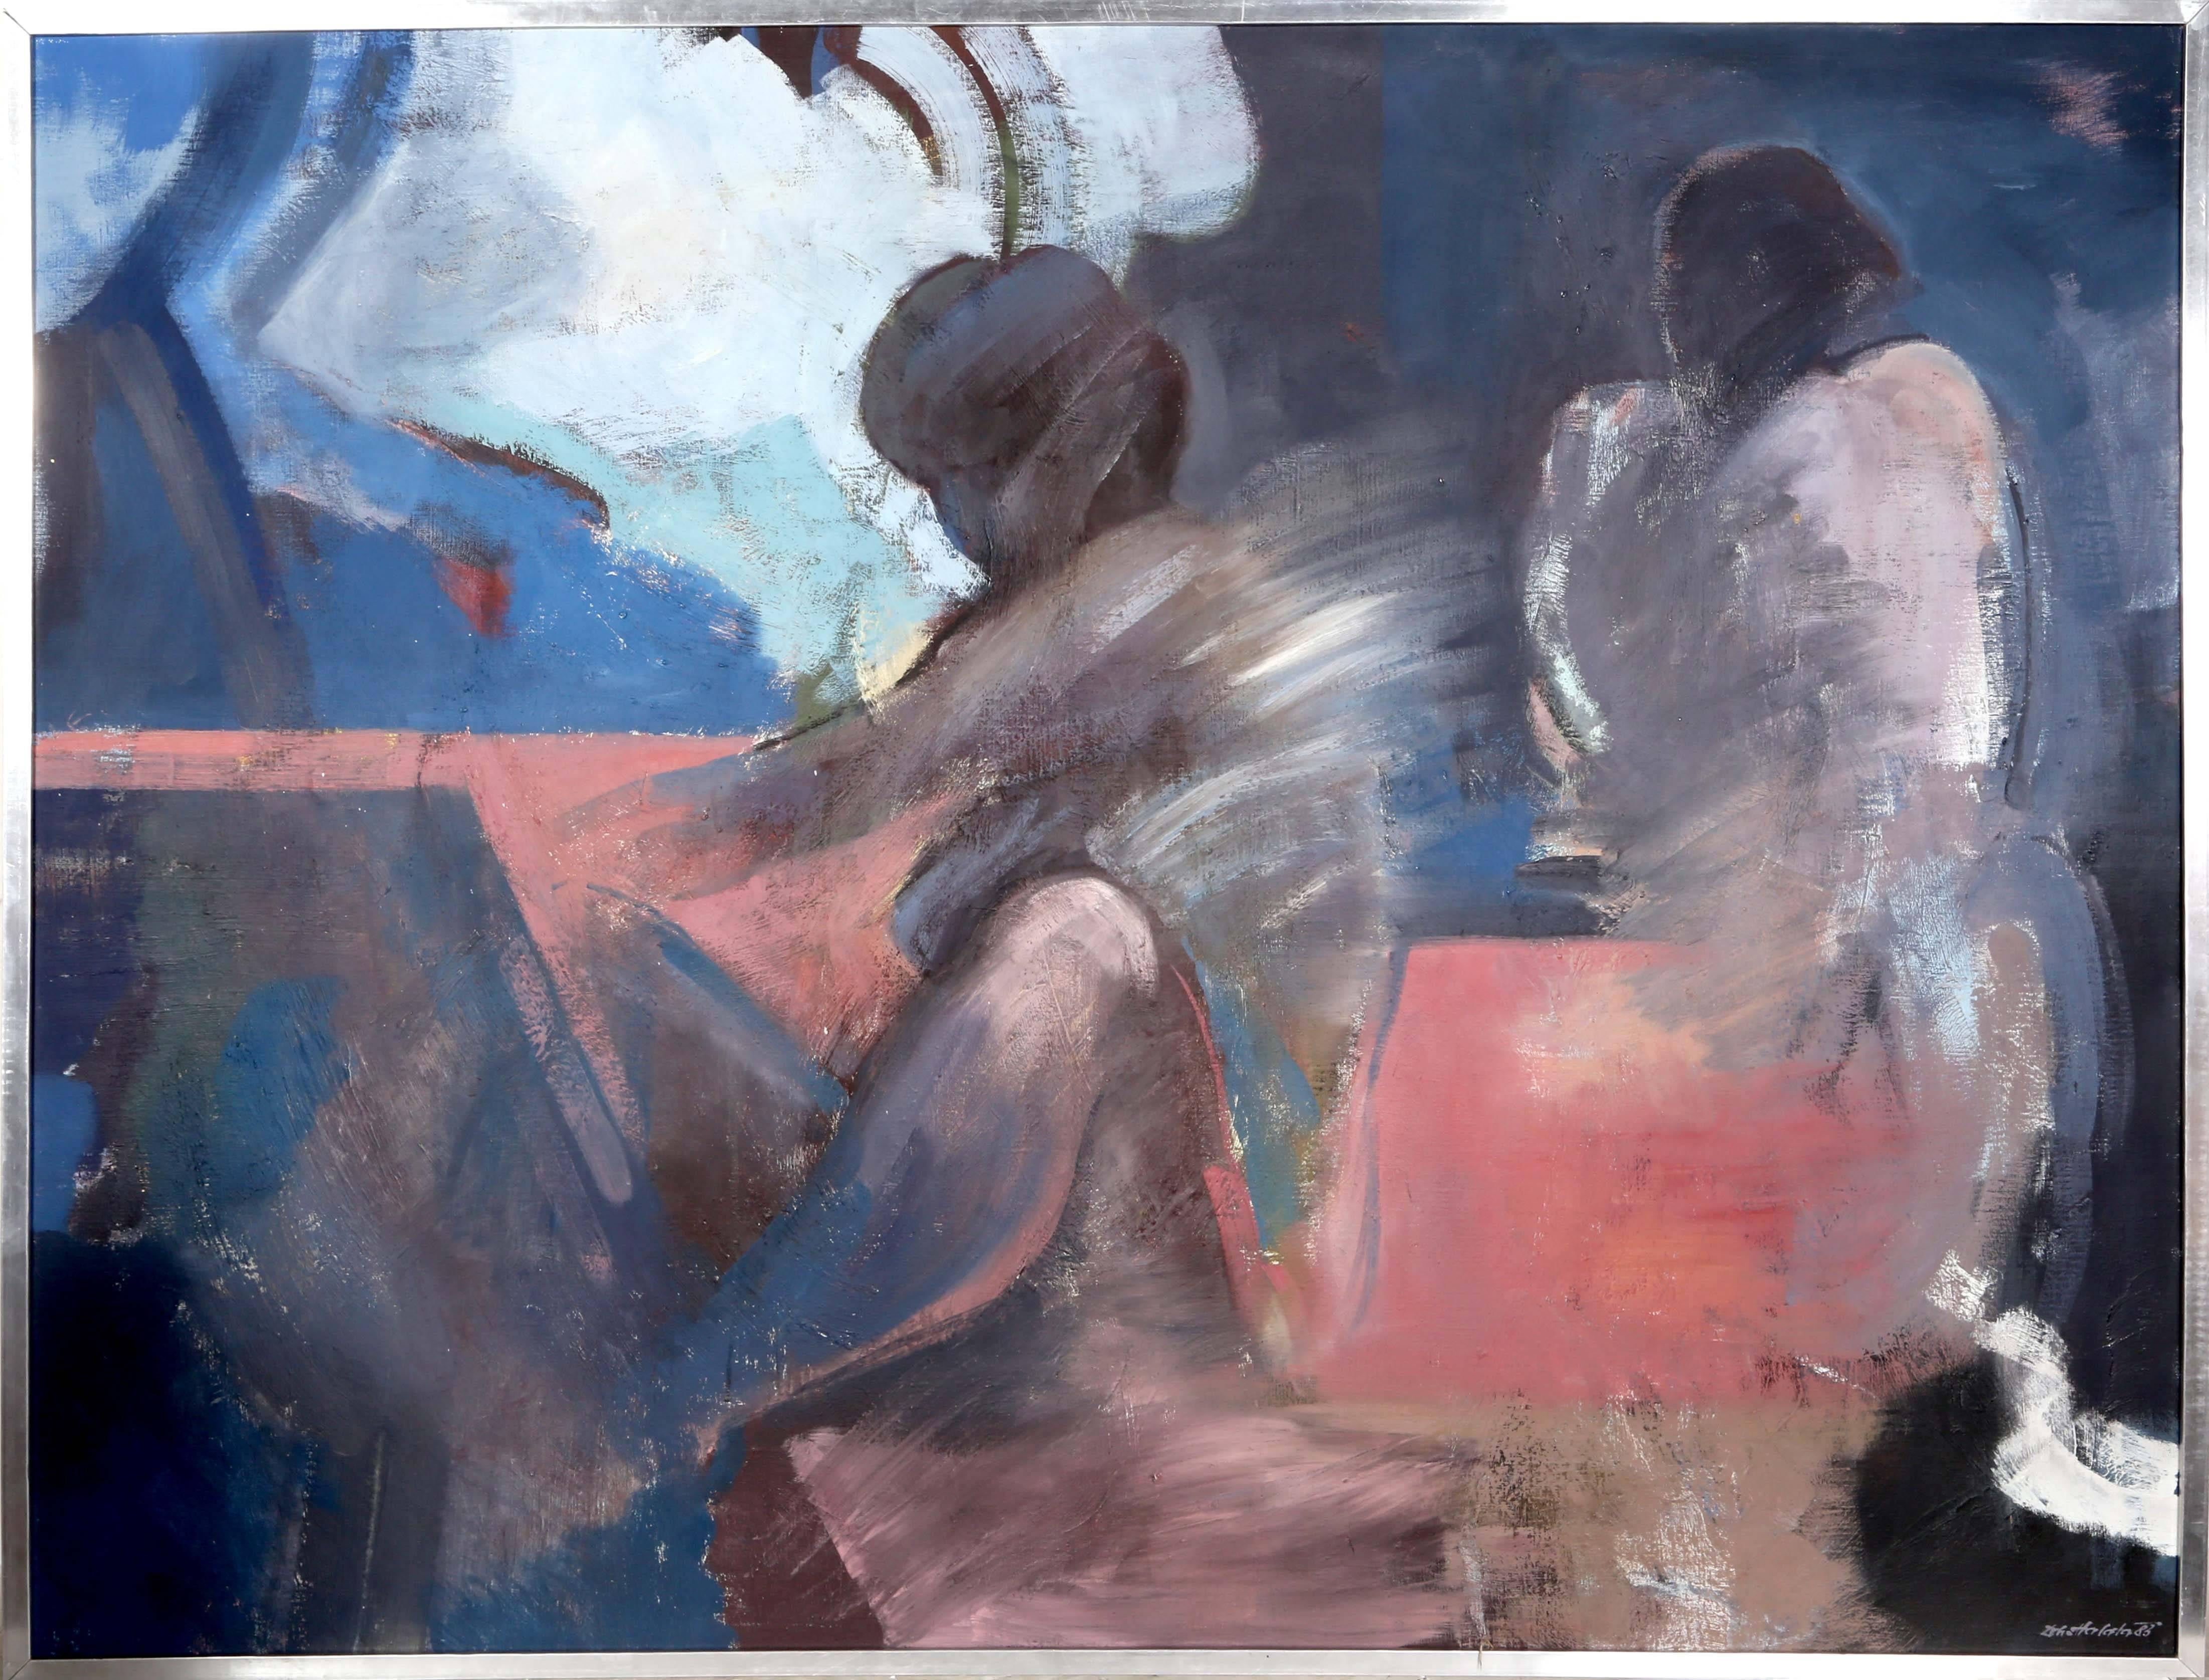 Artistics : Dobroslav Halata, Tchèque (1943 - )
Titre : Deux figures nues
Année : 1983
Moyen d'expression : Huile sur toile, signée
Taille : 45.5 x 59.25 in. (115.57 x 150.5 cm)